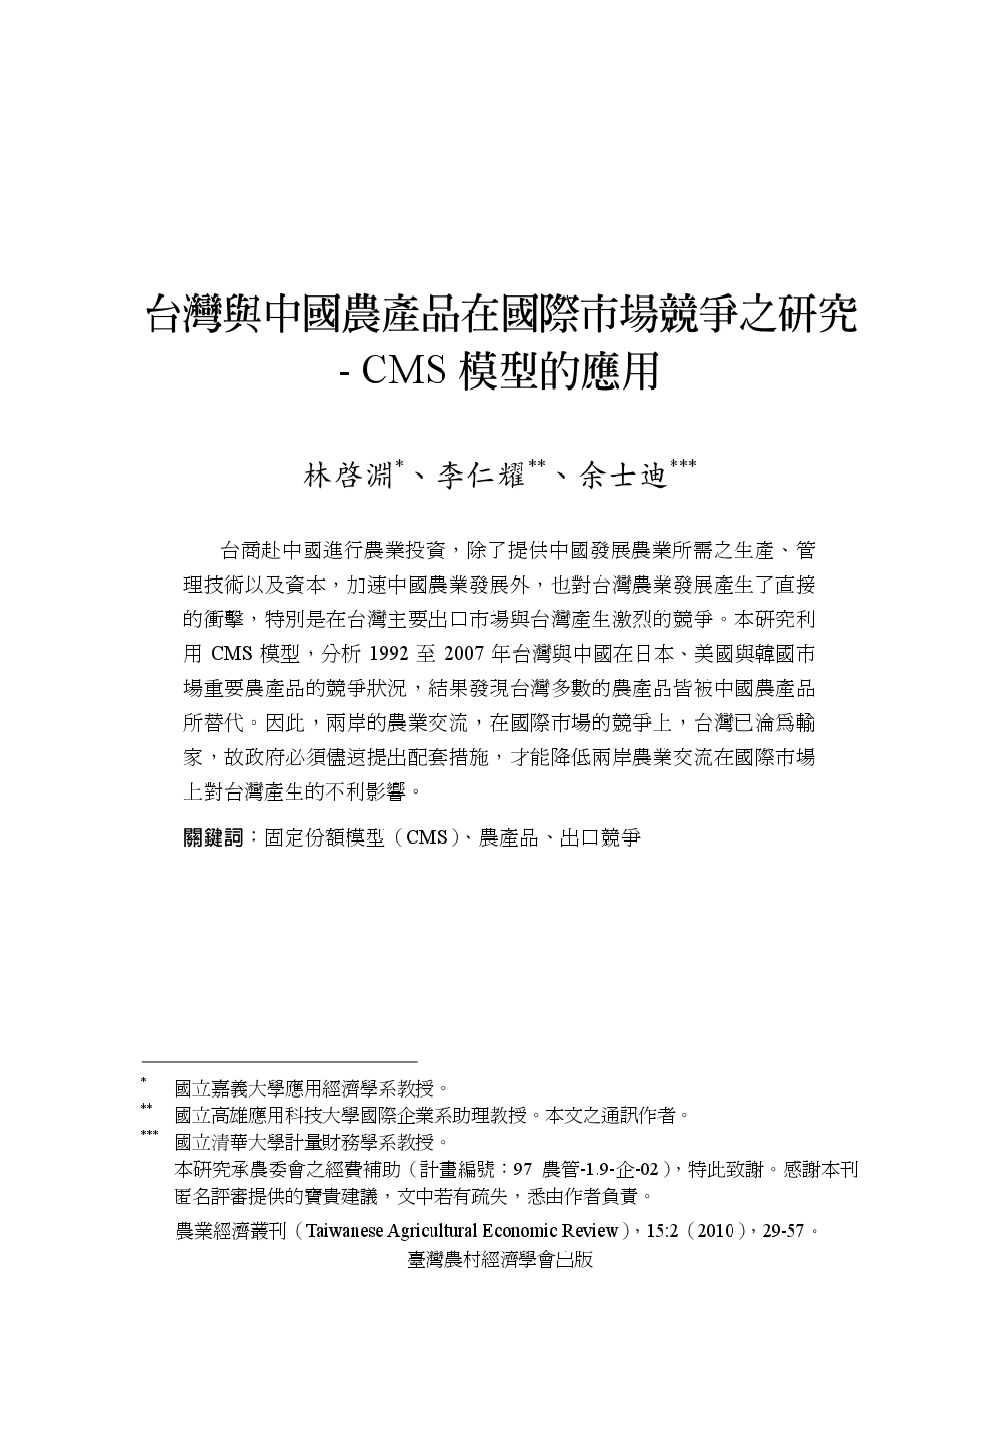 台灣與中國農產品在國際市場競爭之研究___CMS模型的應用.jpg